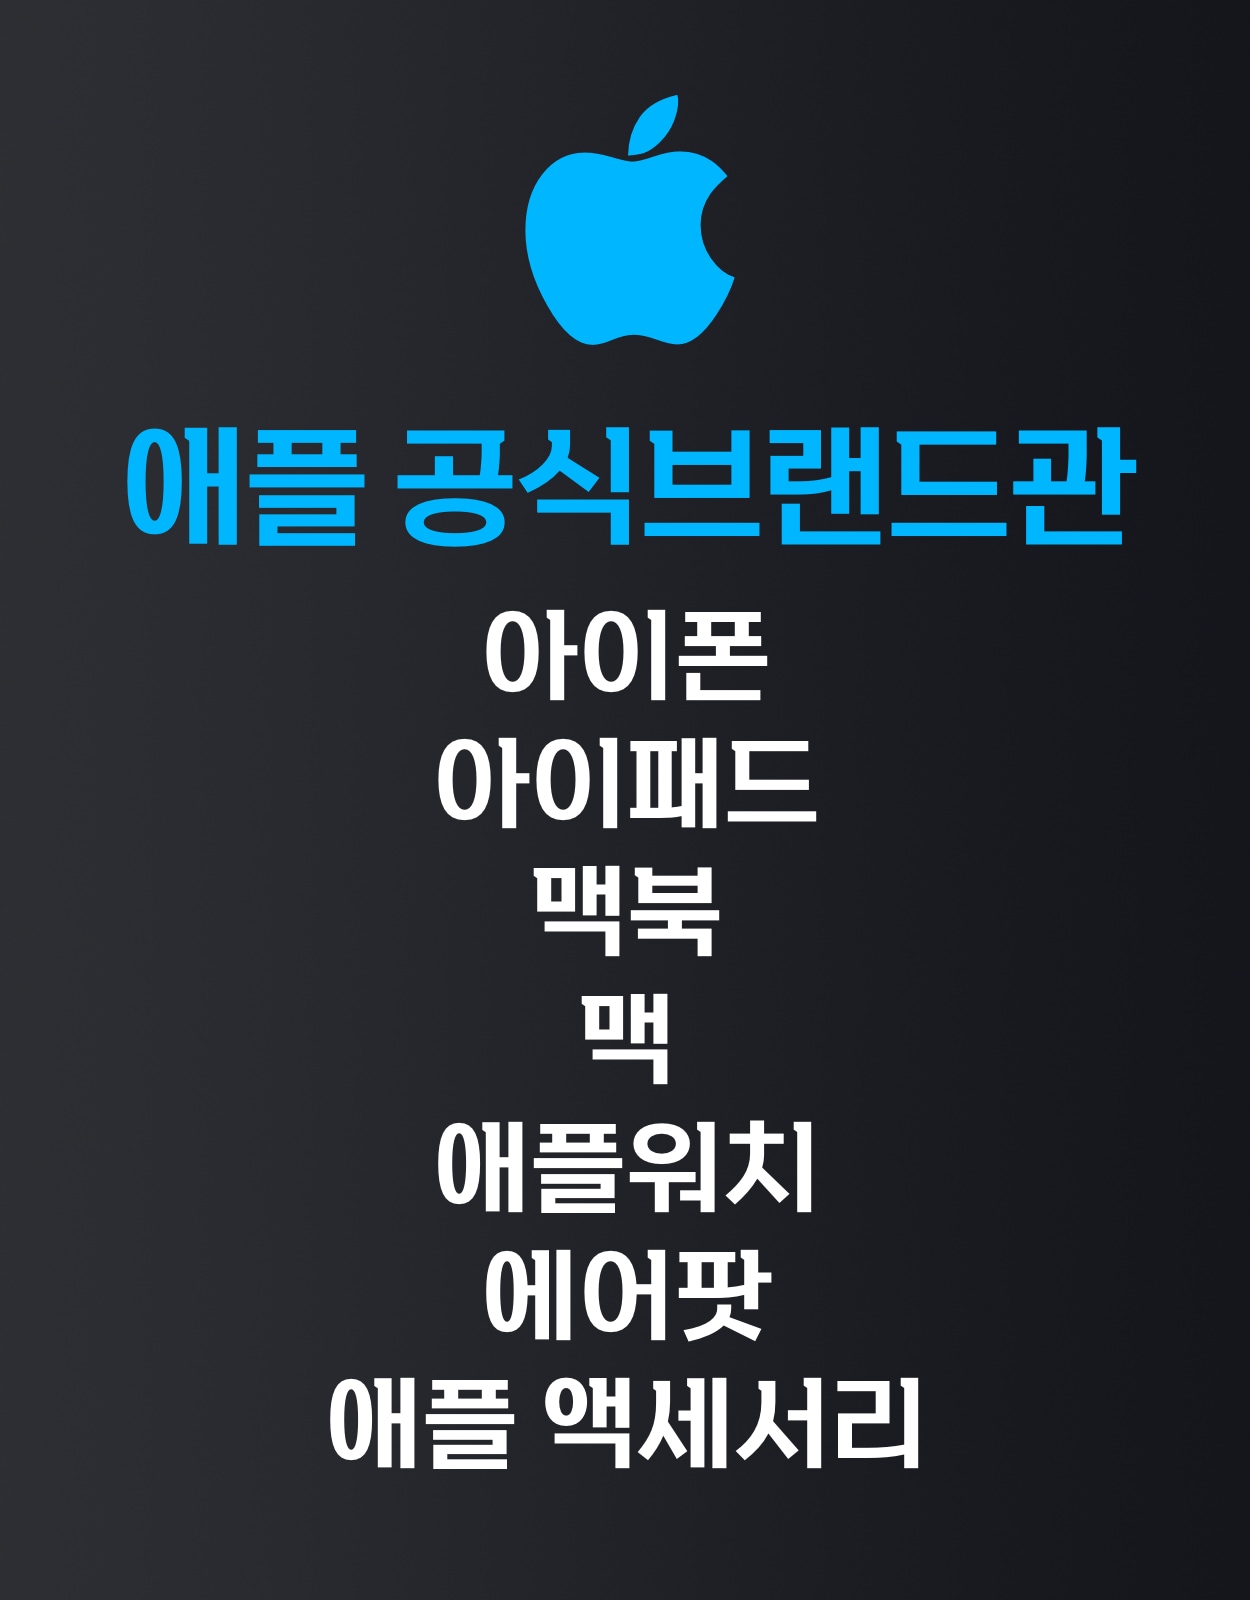  애플 공식 브랜드관